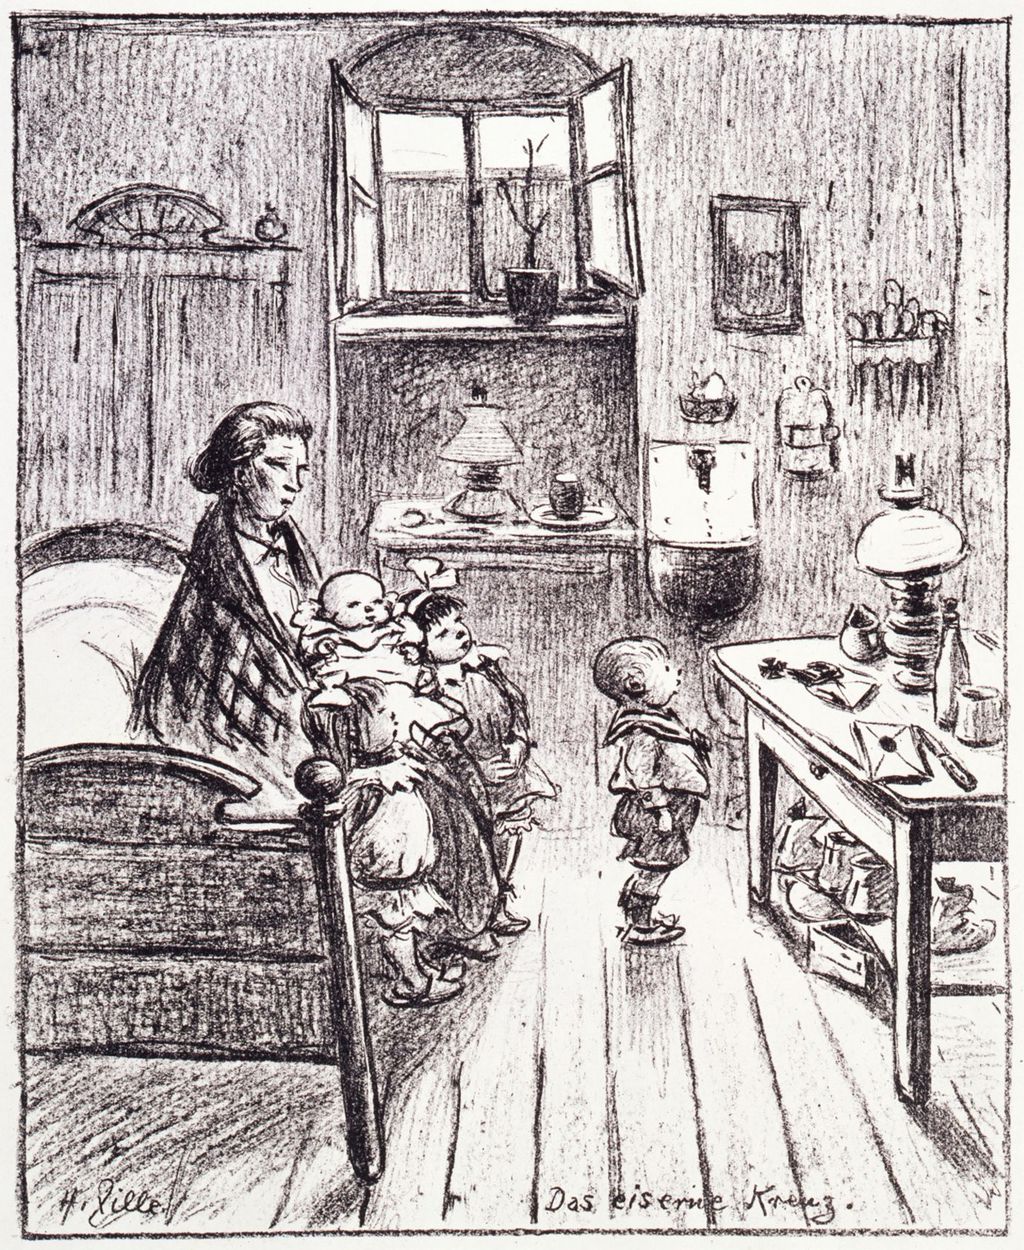 Grafik: Heinrich Zille, "Das eiserne Kreuz", 1916